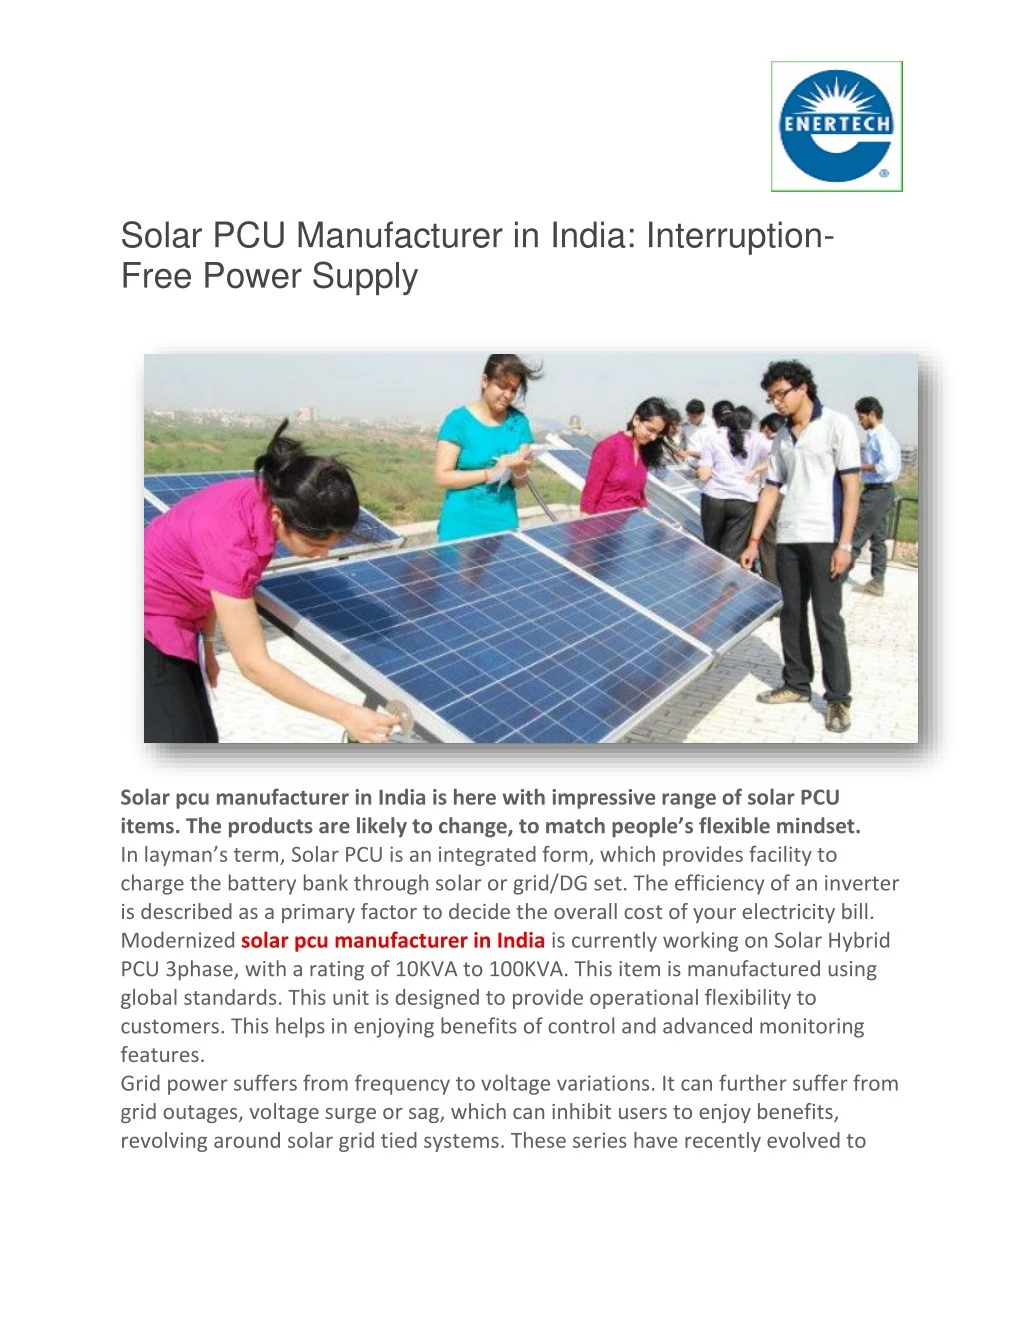 solar pcu manufacturer in india interruption free